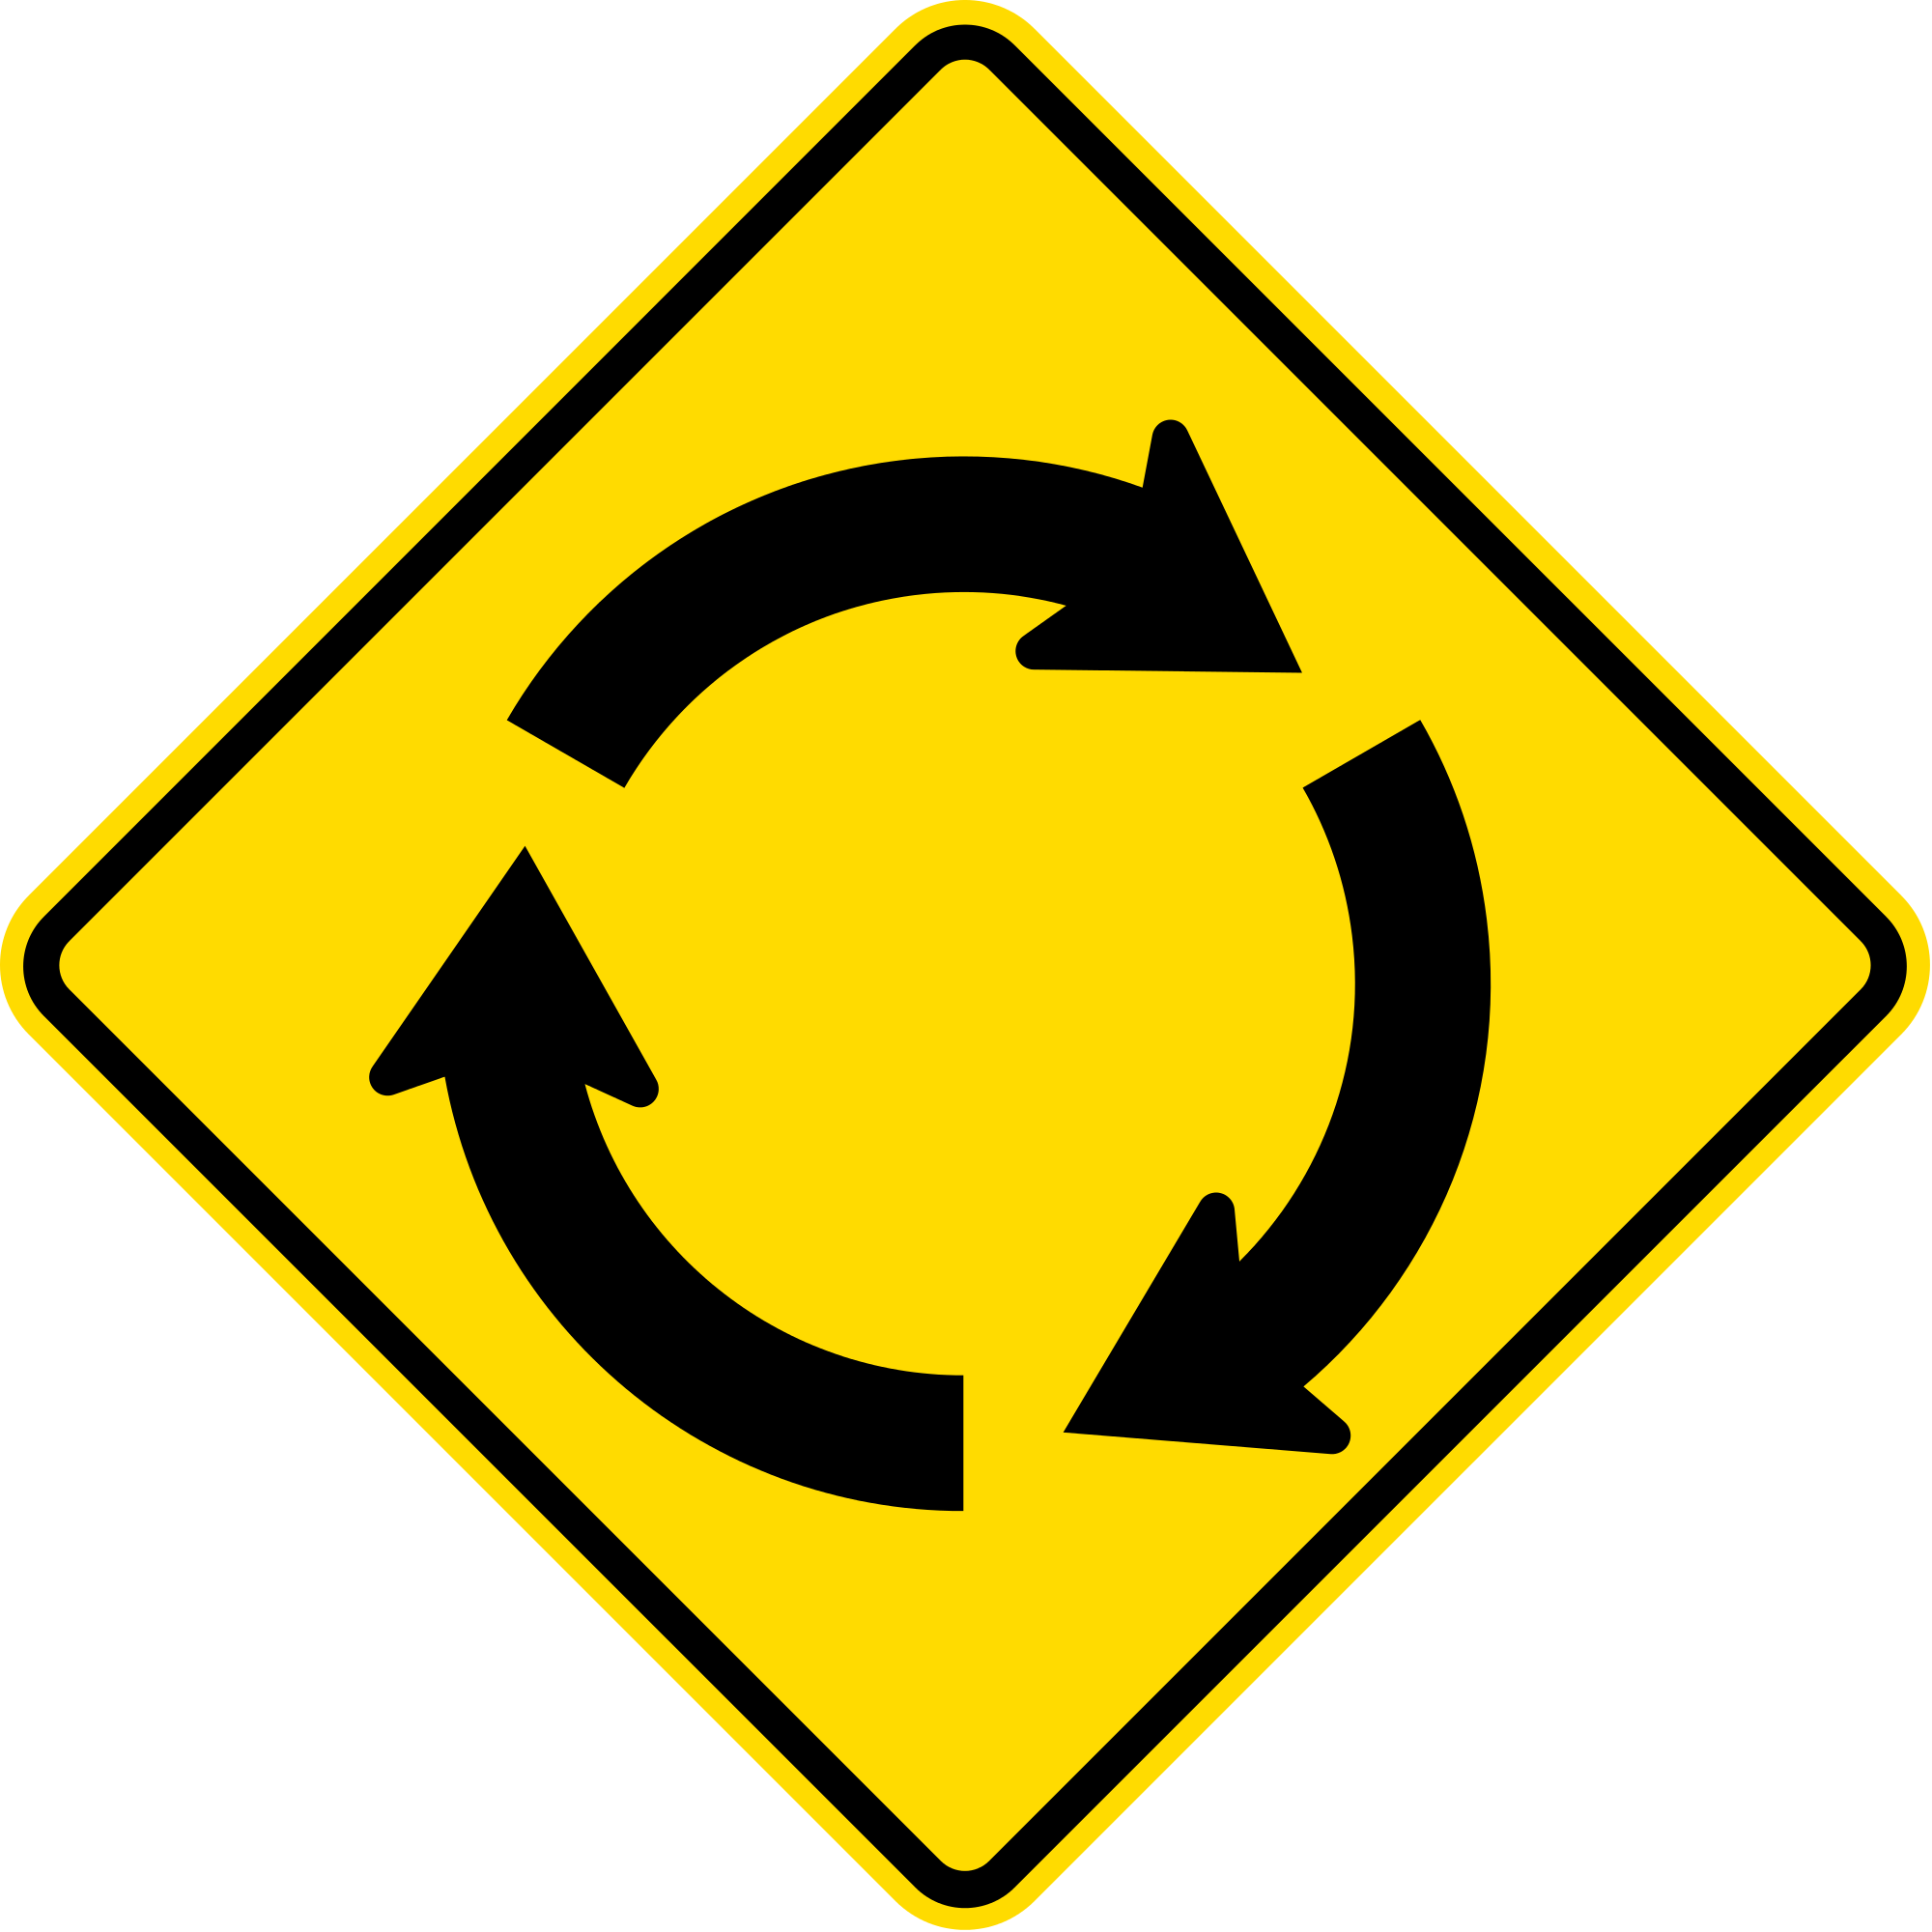 Open - T Junction Ahead Road Sign In Sri Lanka (2000x2000)